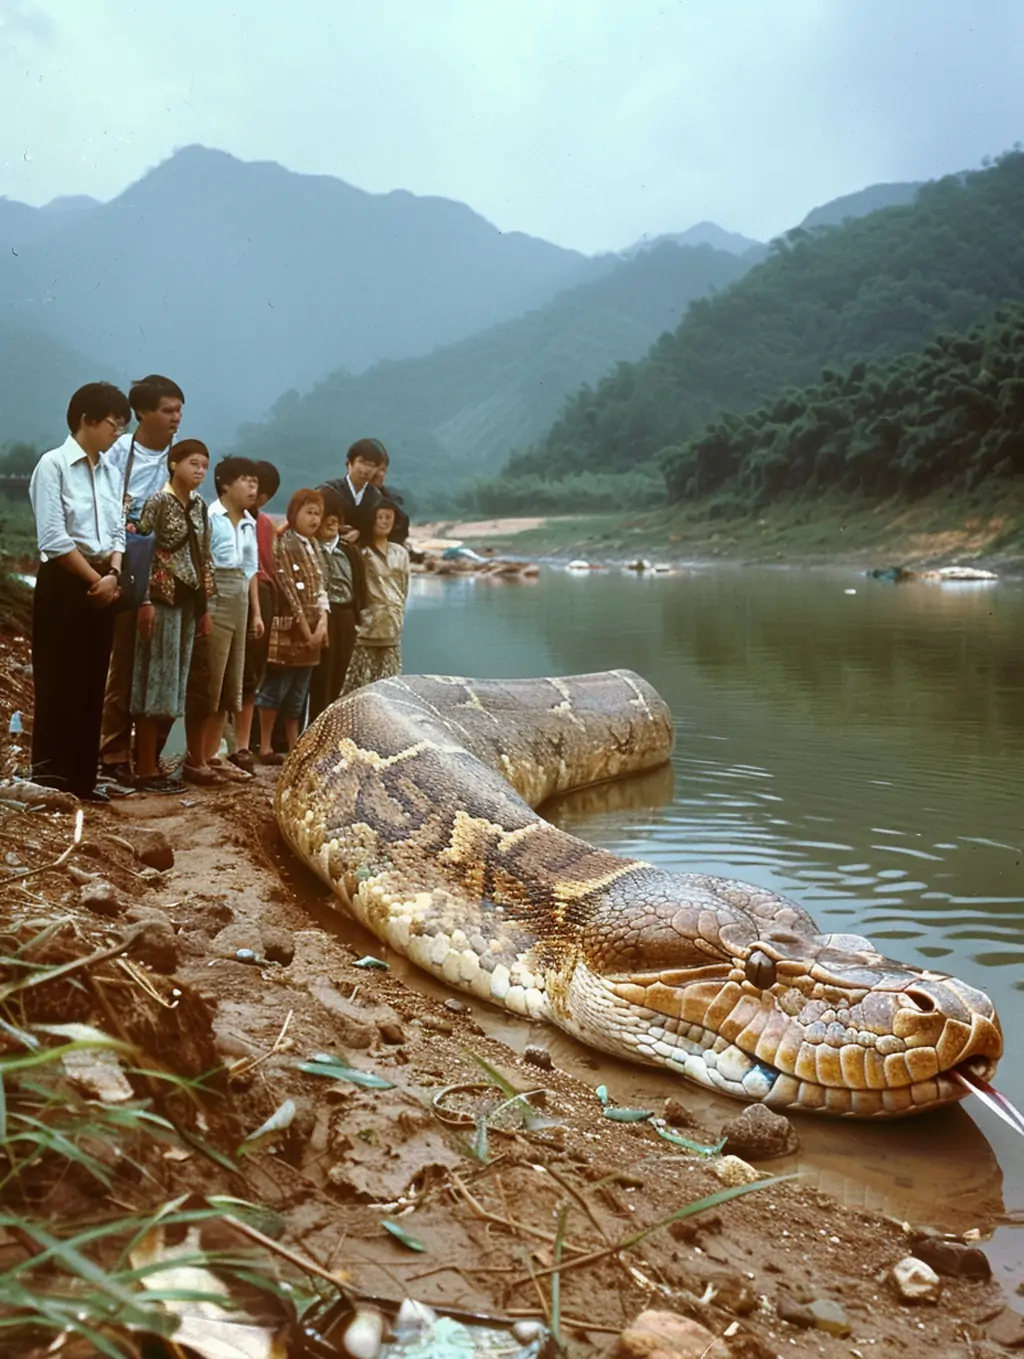 中国南方河岸巨蛇捕捉围观场景摄影海报midjourney关键词咒语-Ai宇宙吧-